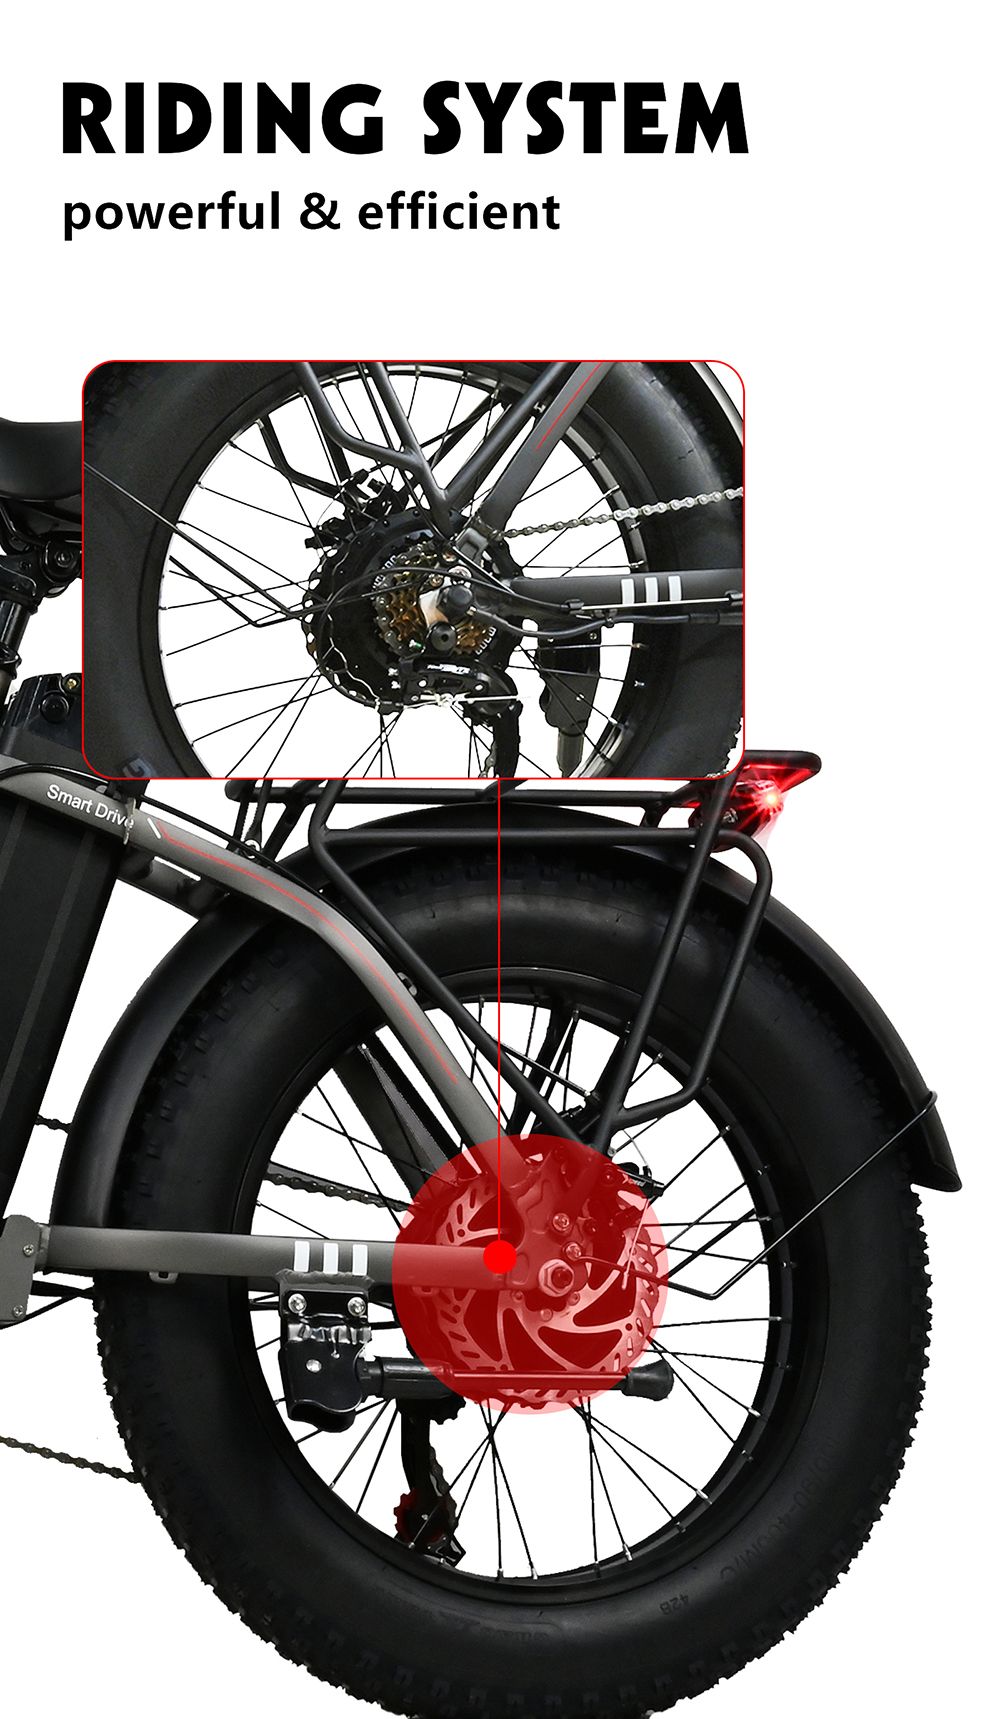 BAOLUJIE DZ2001 összecsukható elektromos kerékpár, 48V 12Ah akkumulátor 500W motor 20*4.0inch Gumik 45km/h Max sebesség 30-40km tartomány Tárcsafék - szürke